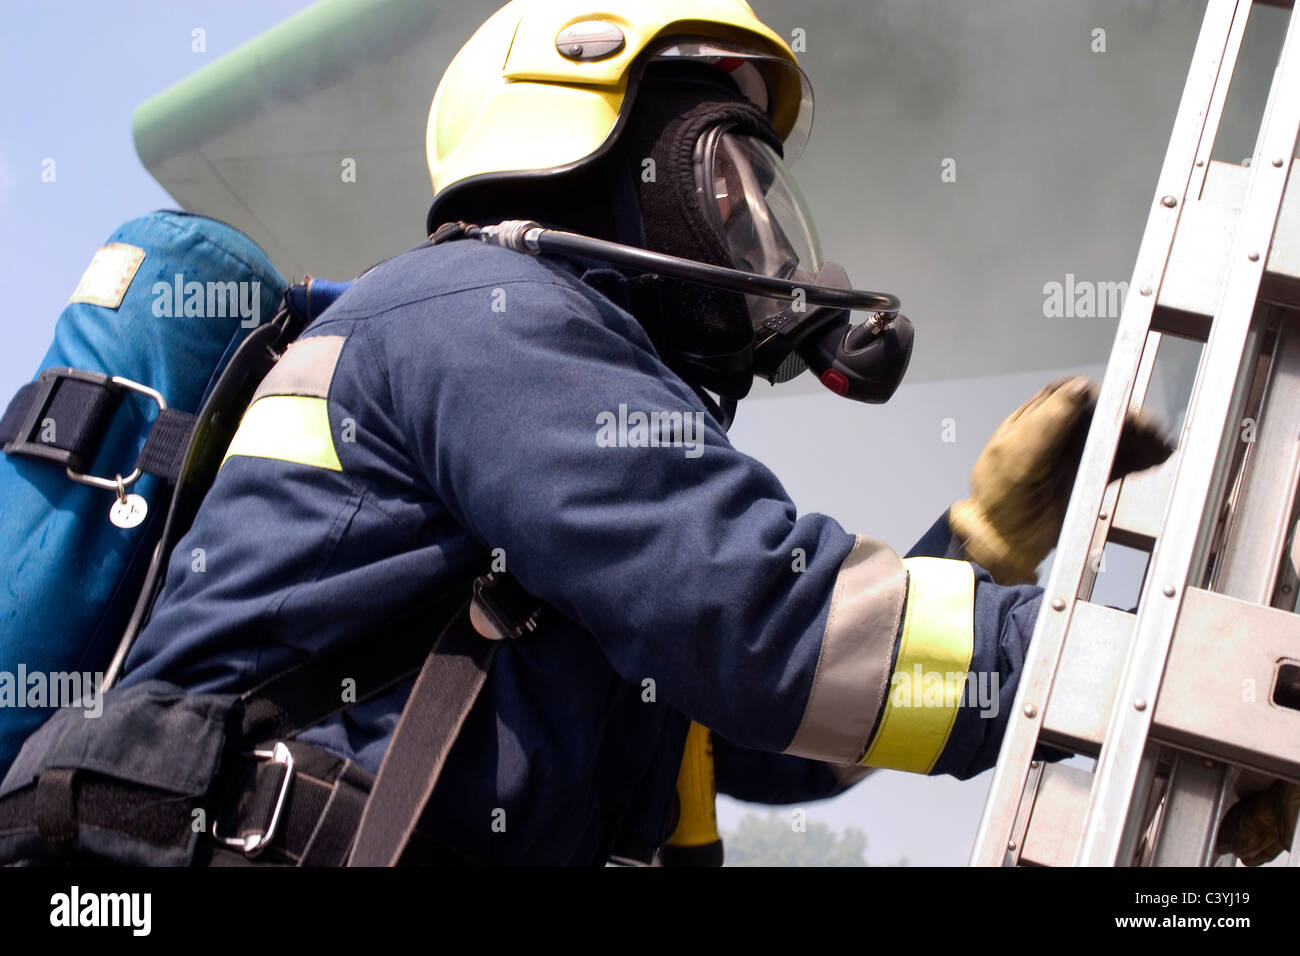 Airport firefighter climbing a ladder Stock Photo